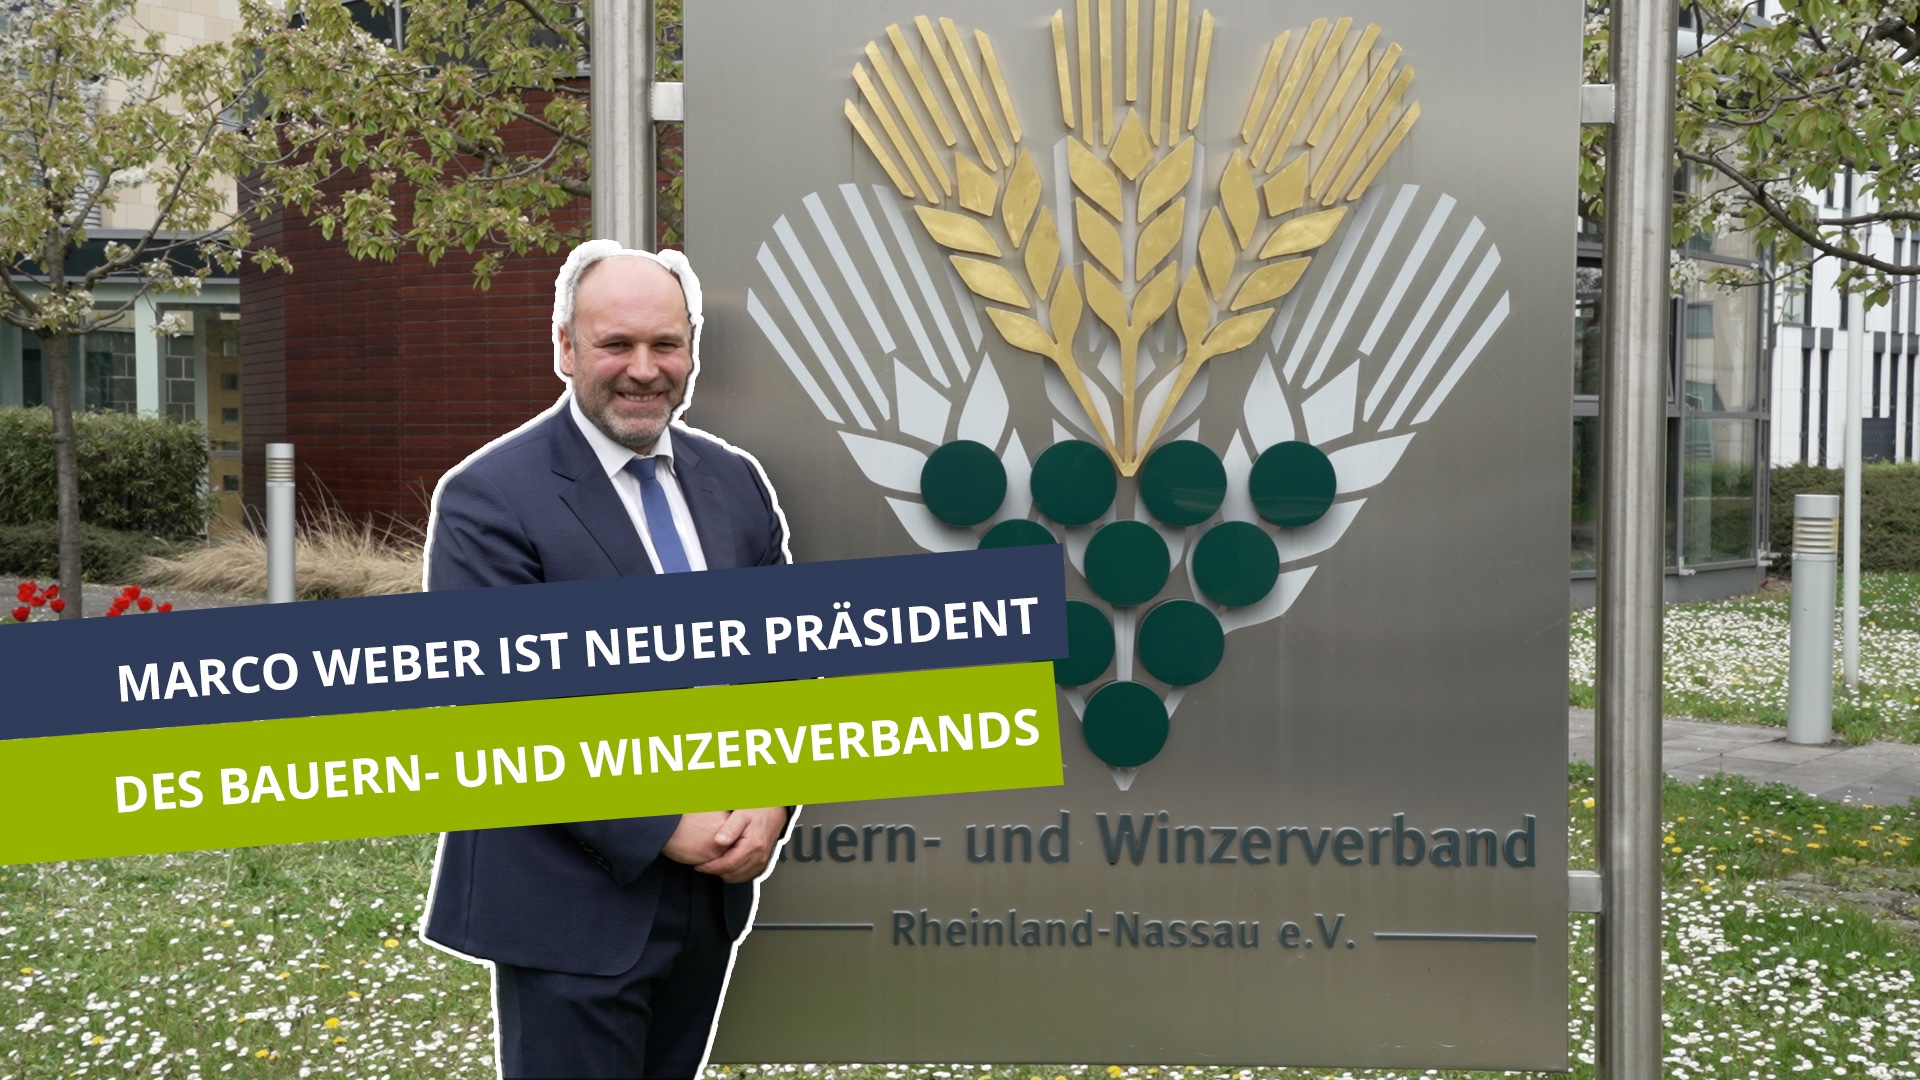 Marco Weber ist neuer Präsident des Bauern- und Winzerverbands